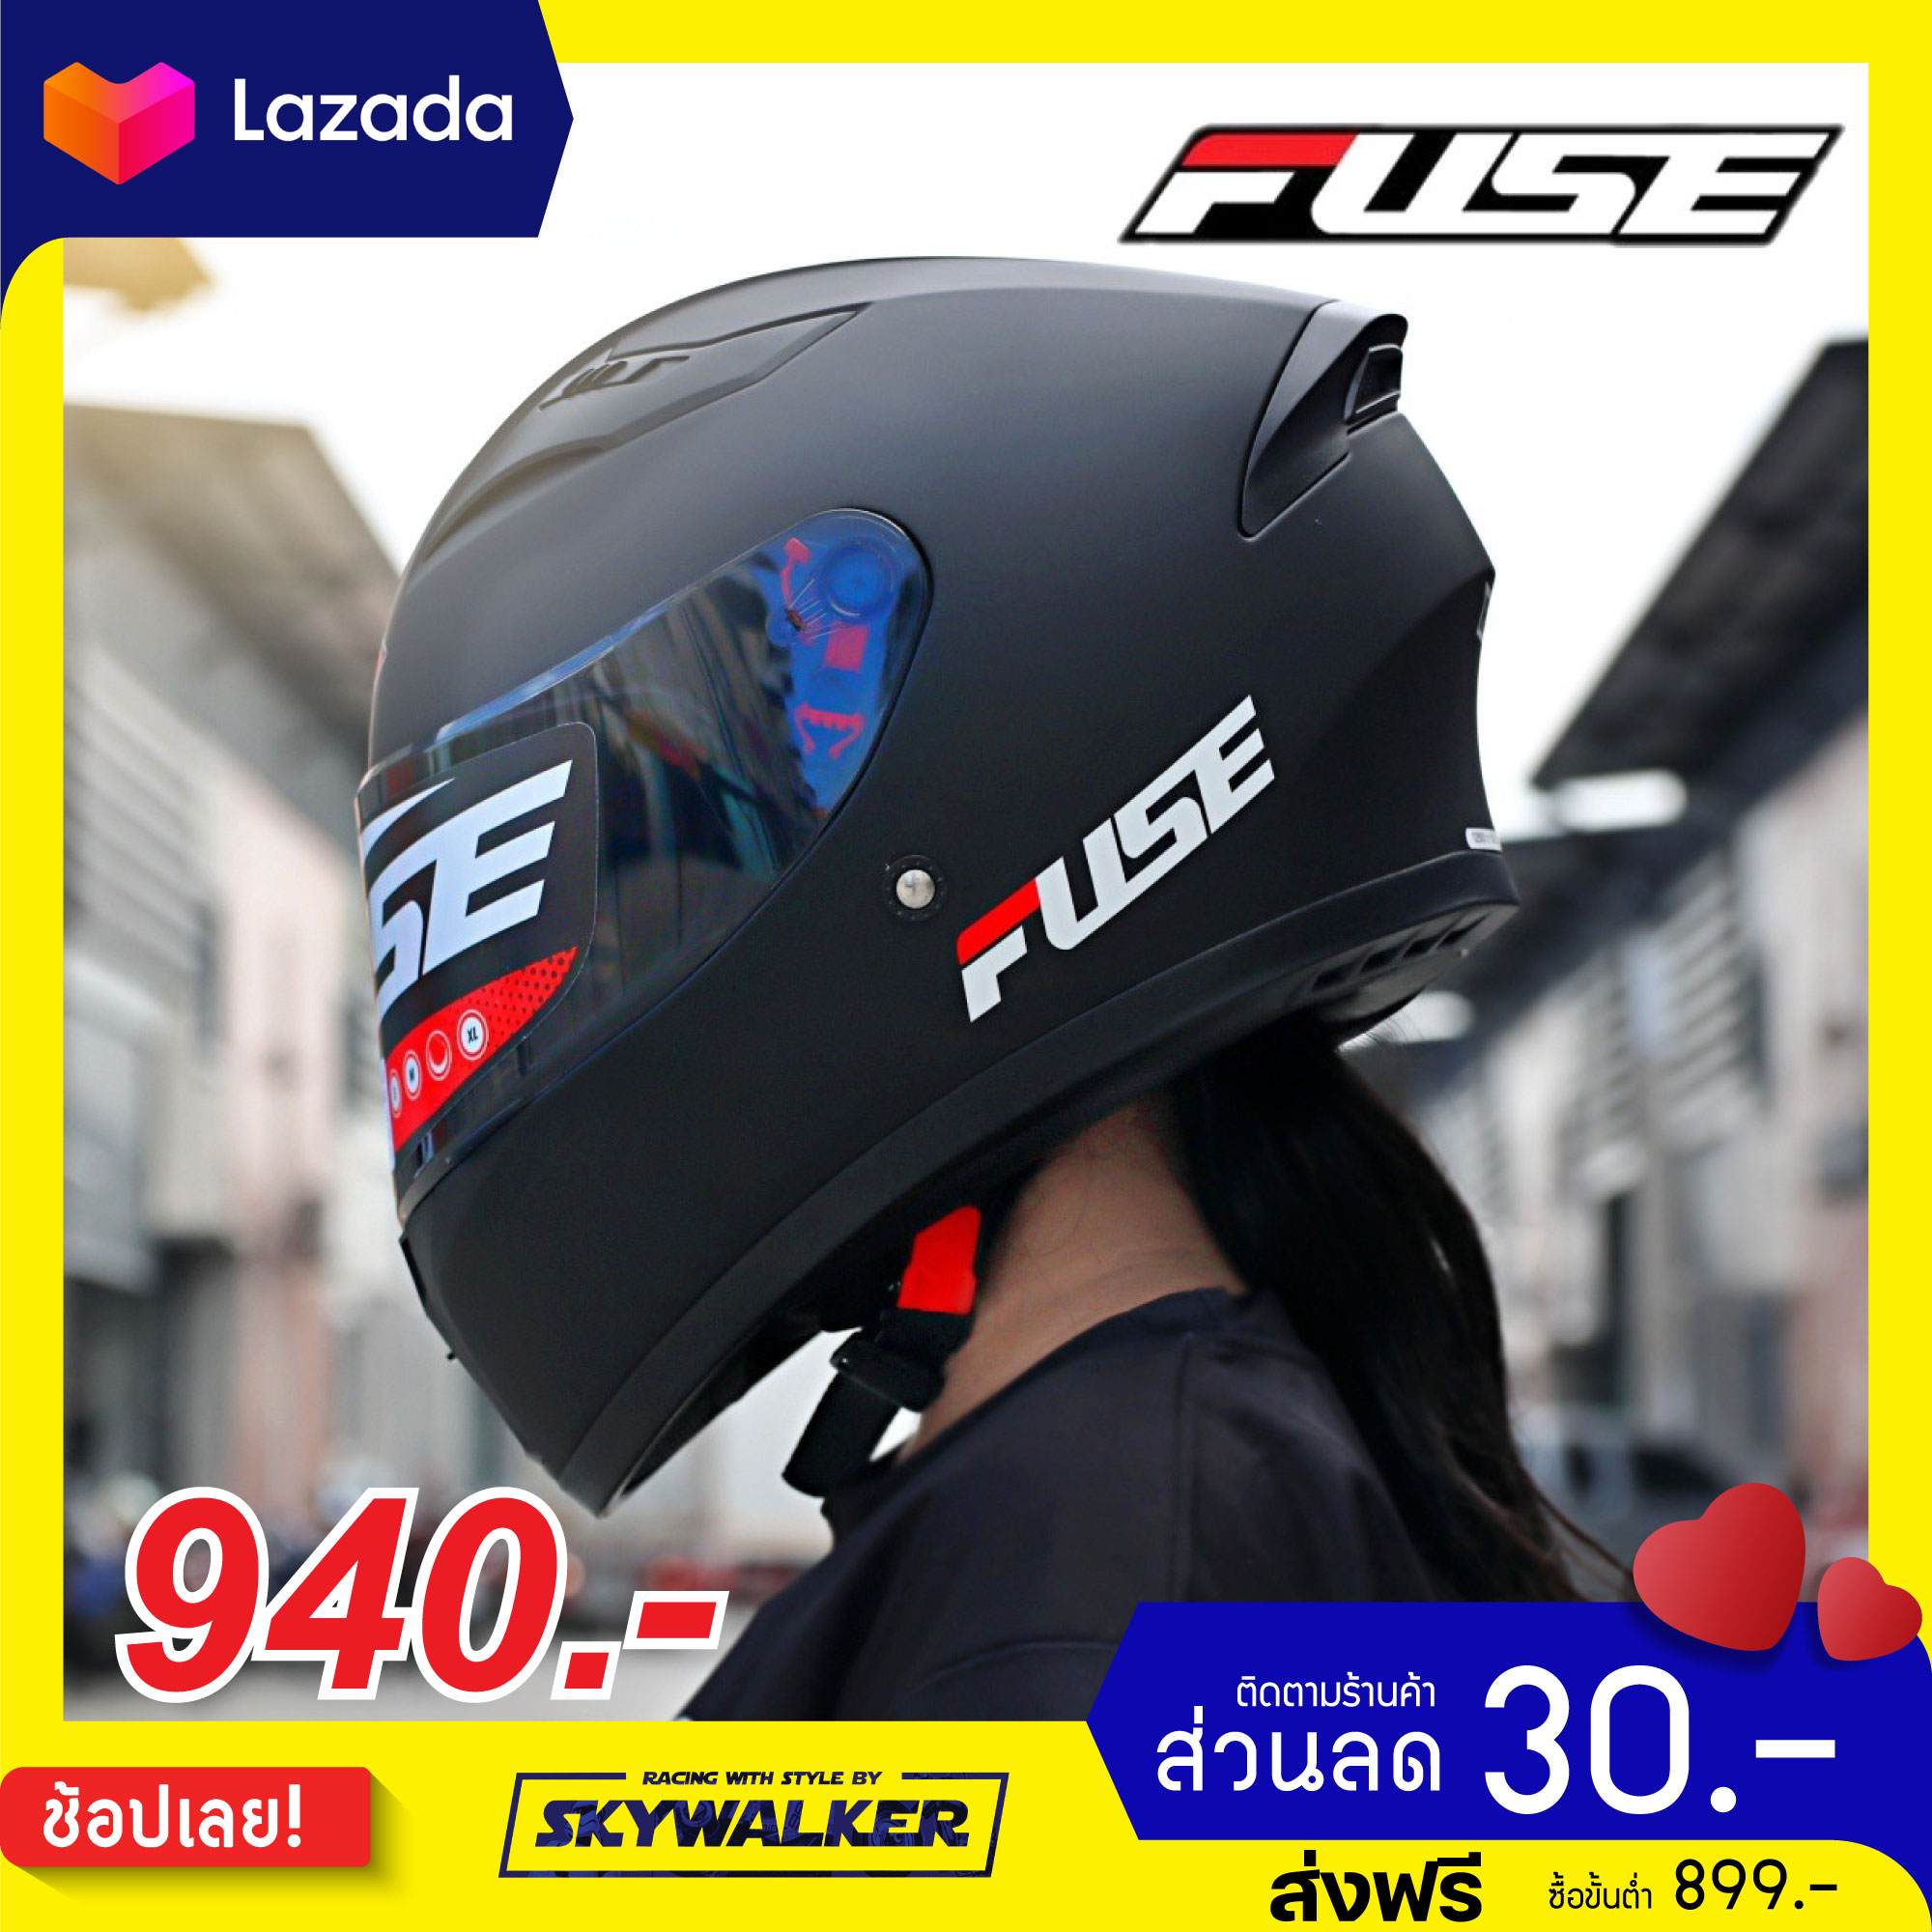 หมวกกันน็อค FUSE รุ่น RAZOR ลายใหม่ 2020 แถมถุงมือ Probiker 46 ทุกใบ!!!